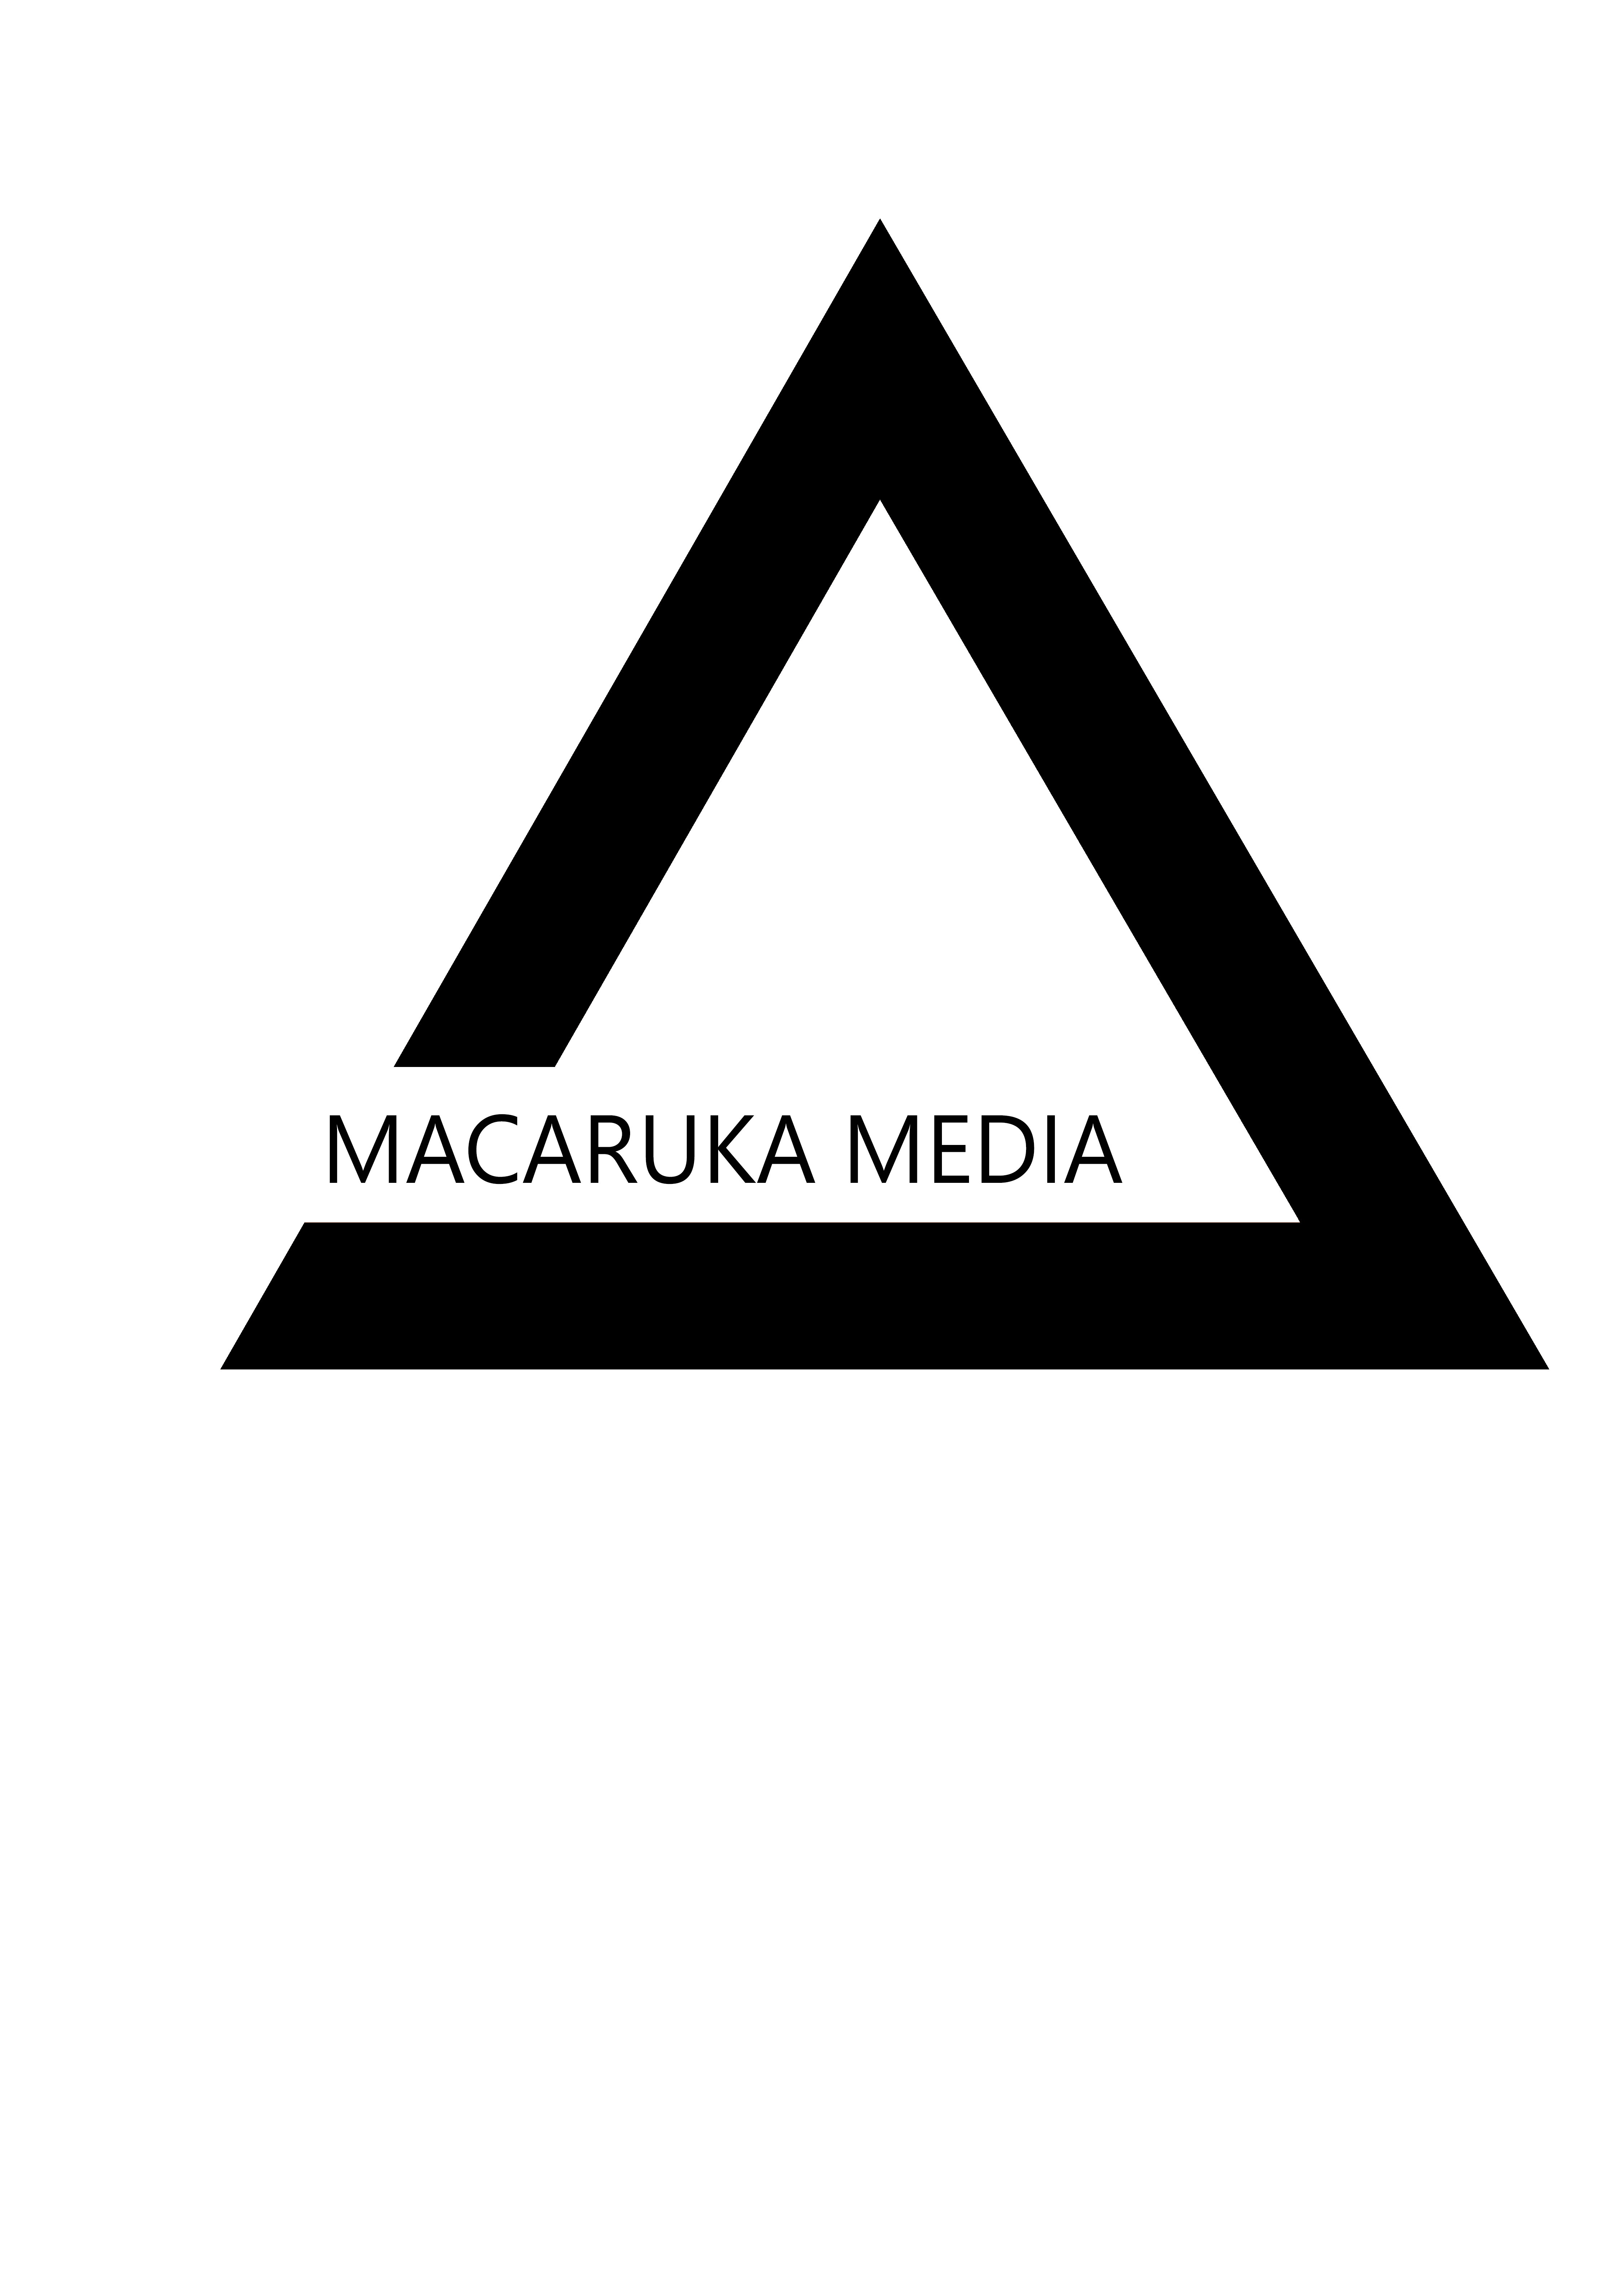 Macaruka logo